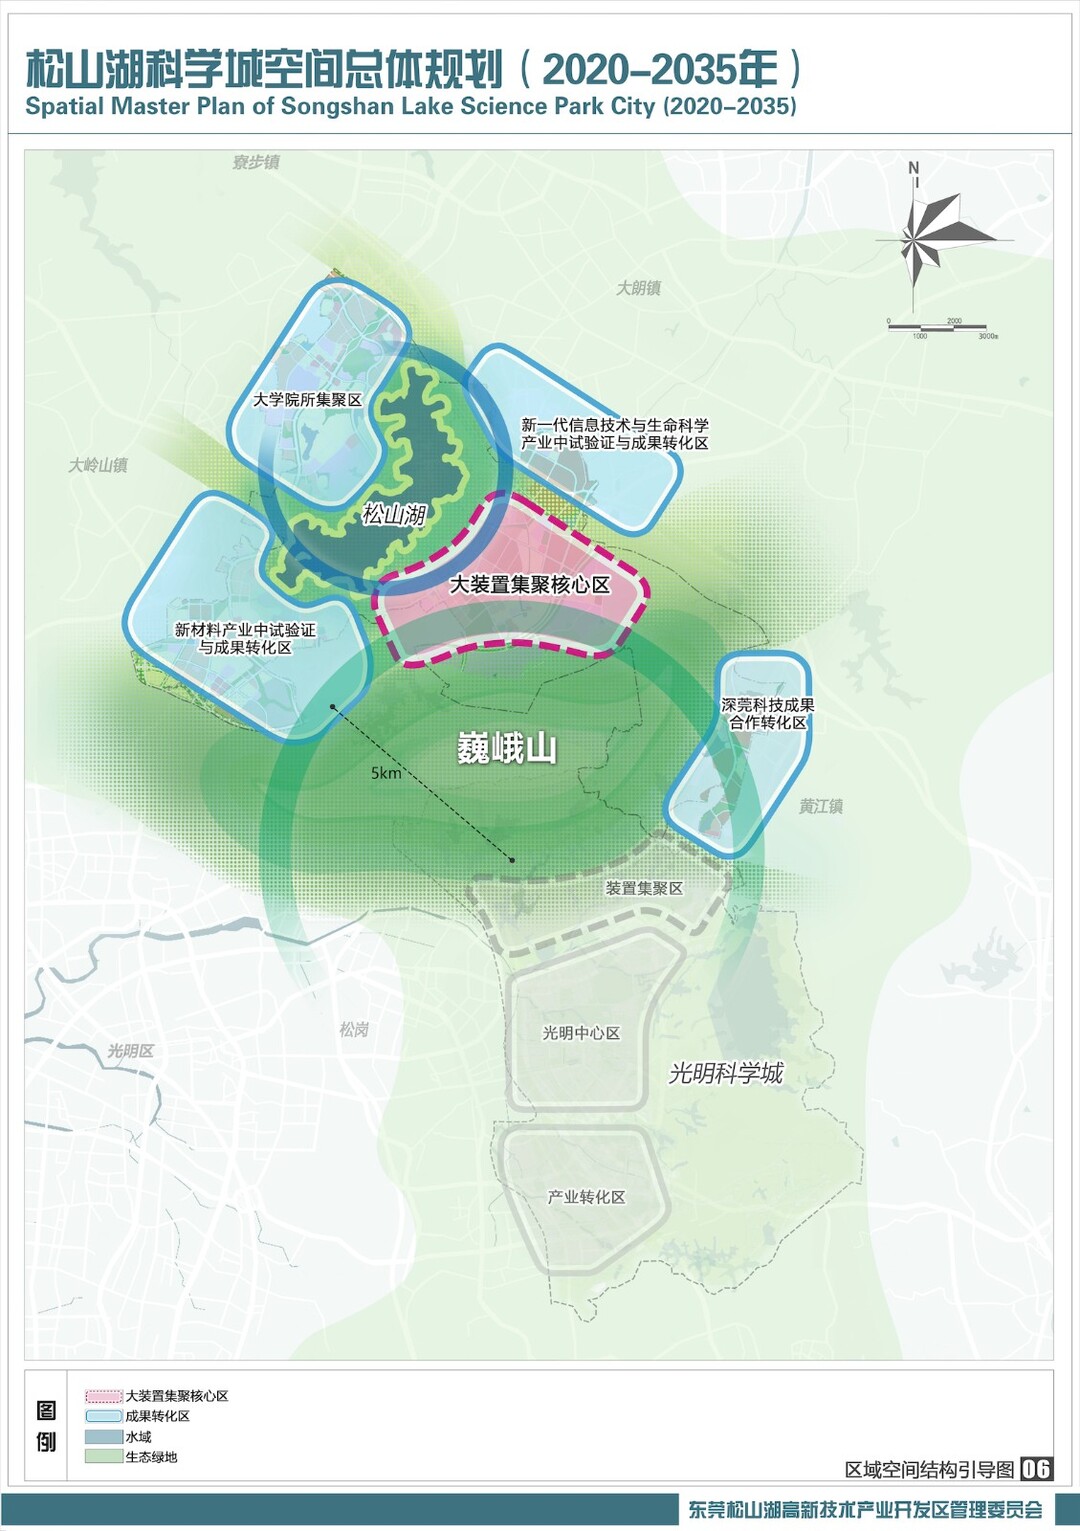 松山湖科学城打造“北湖南山、一核四区”空间布局。.jpg